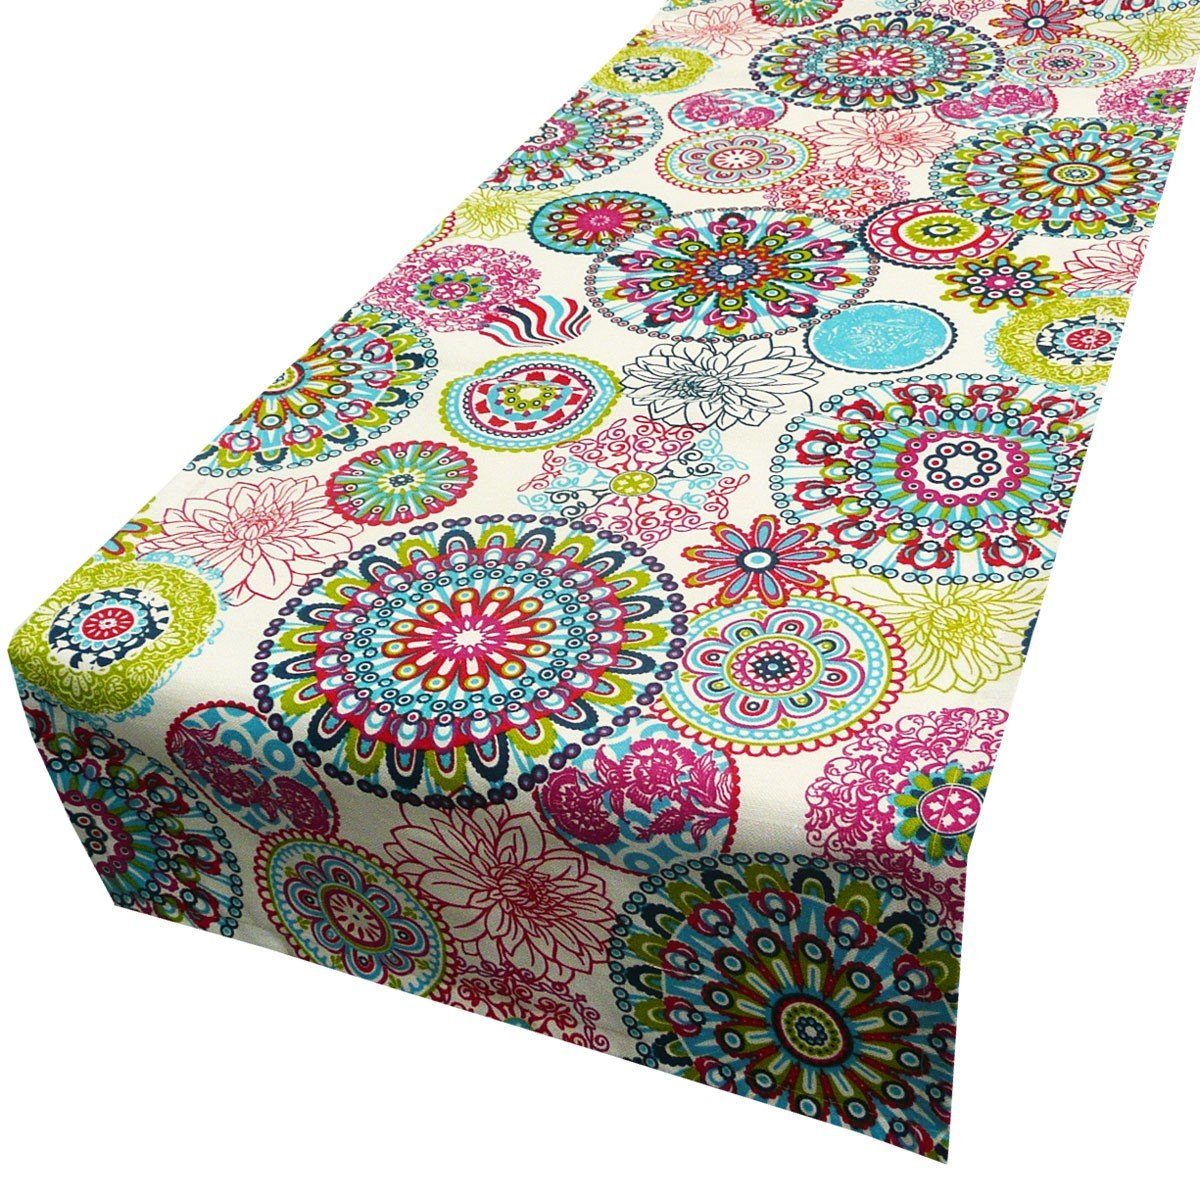 SCHÖNER LEBEN. Tischläufer 40x160cm, Leben handmade Mandala Blumen Schöner bunt Tischläufer